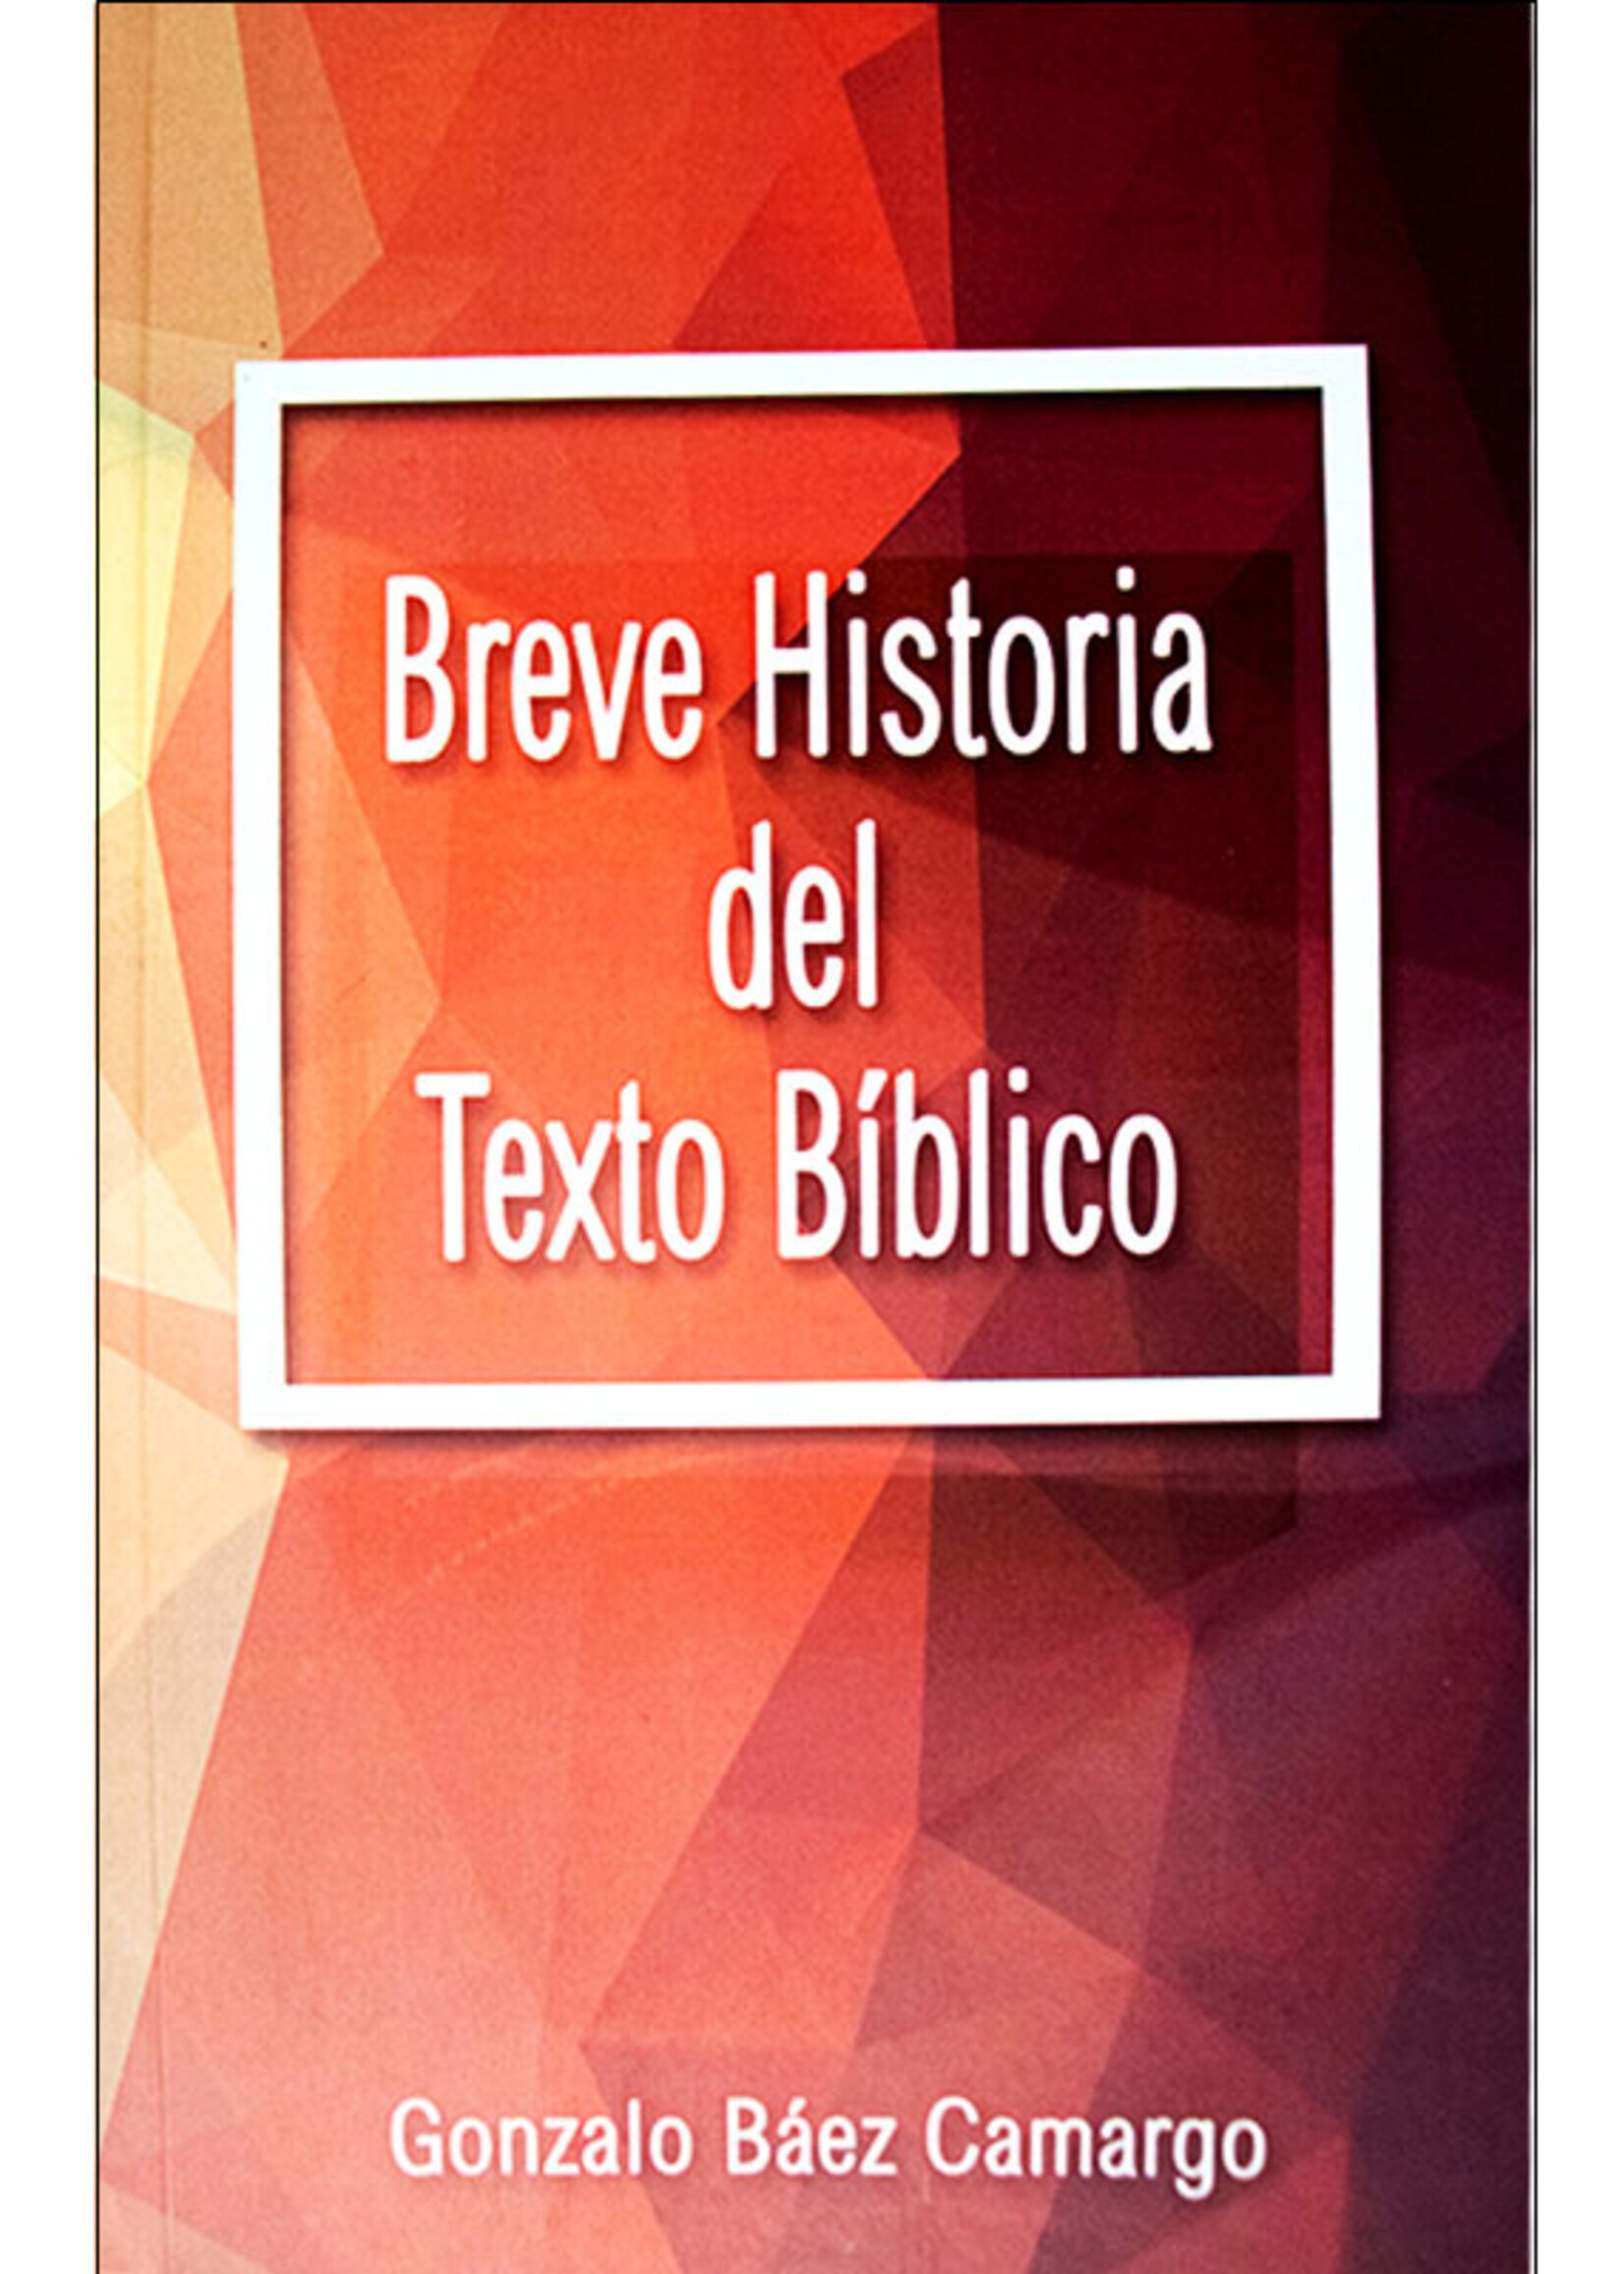 CASA UNIDA DE PUBLICACIONES BREVE HISTORIA DEL TEXTO BIBLICO